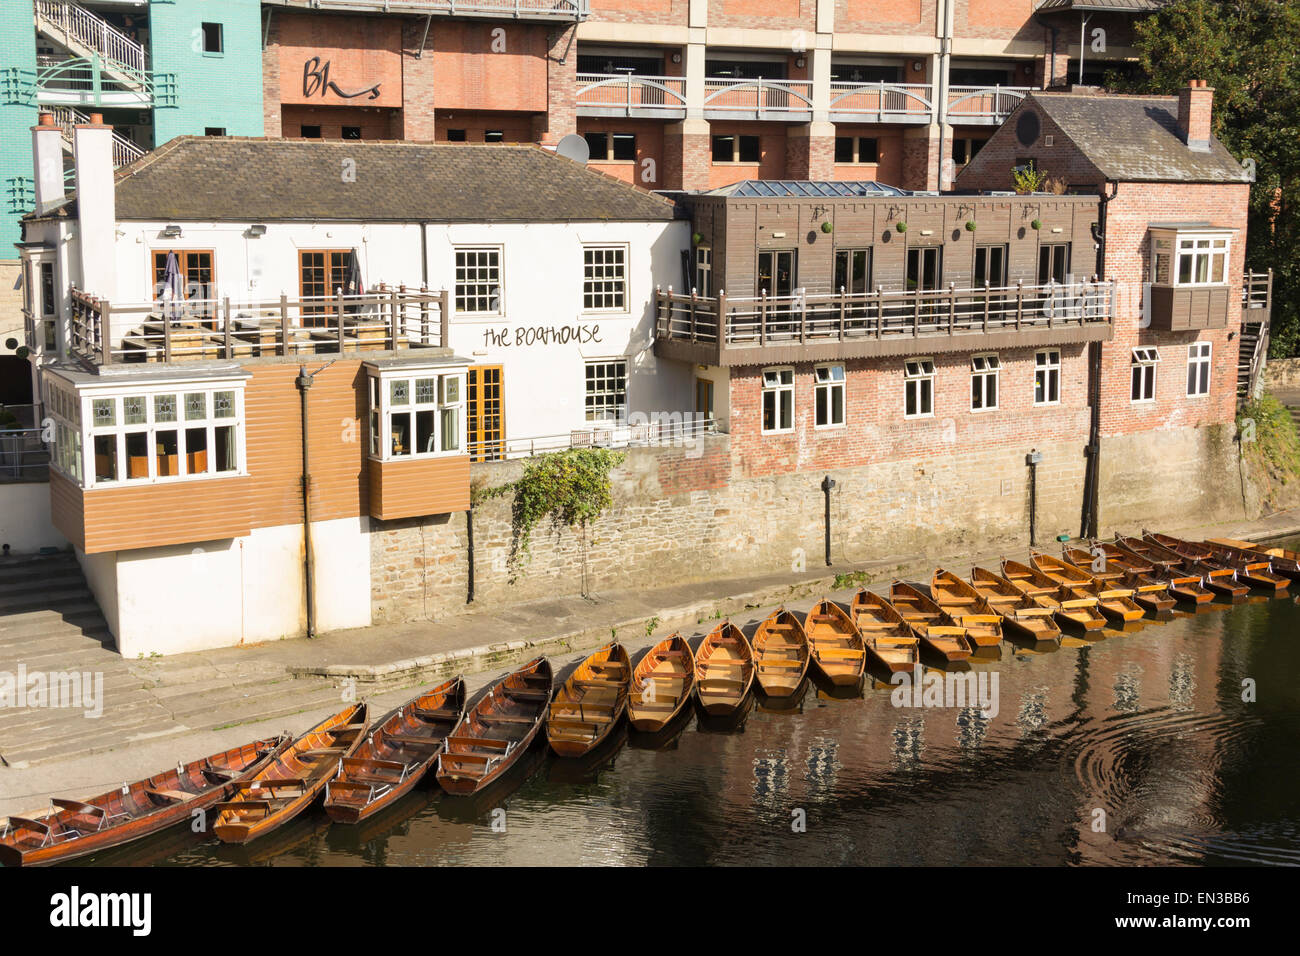 Location de bateaux à rames, amarré à côté du Boathouse pub sur les rives de la rivière l'usure dans Durham. Banque D'Images